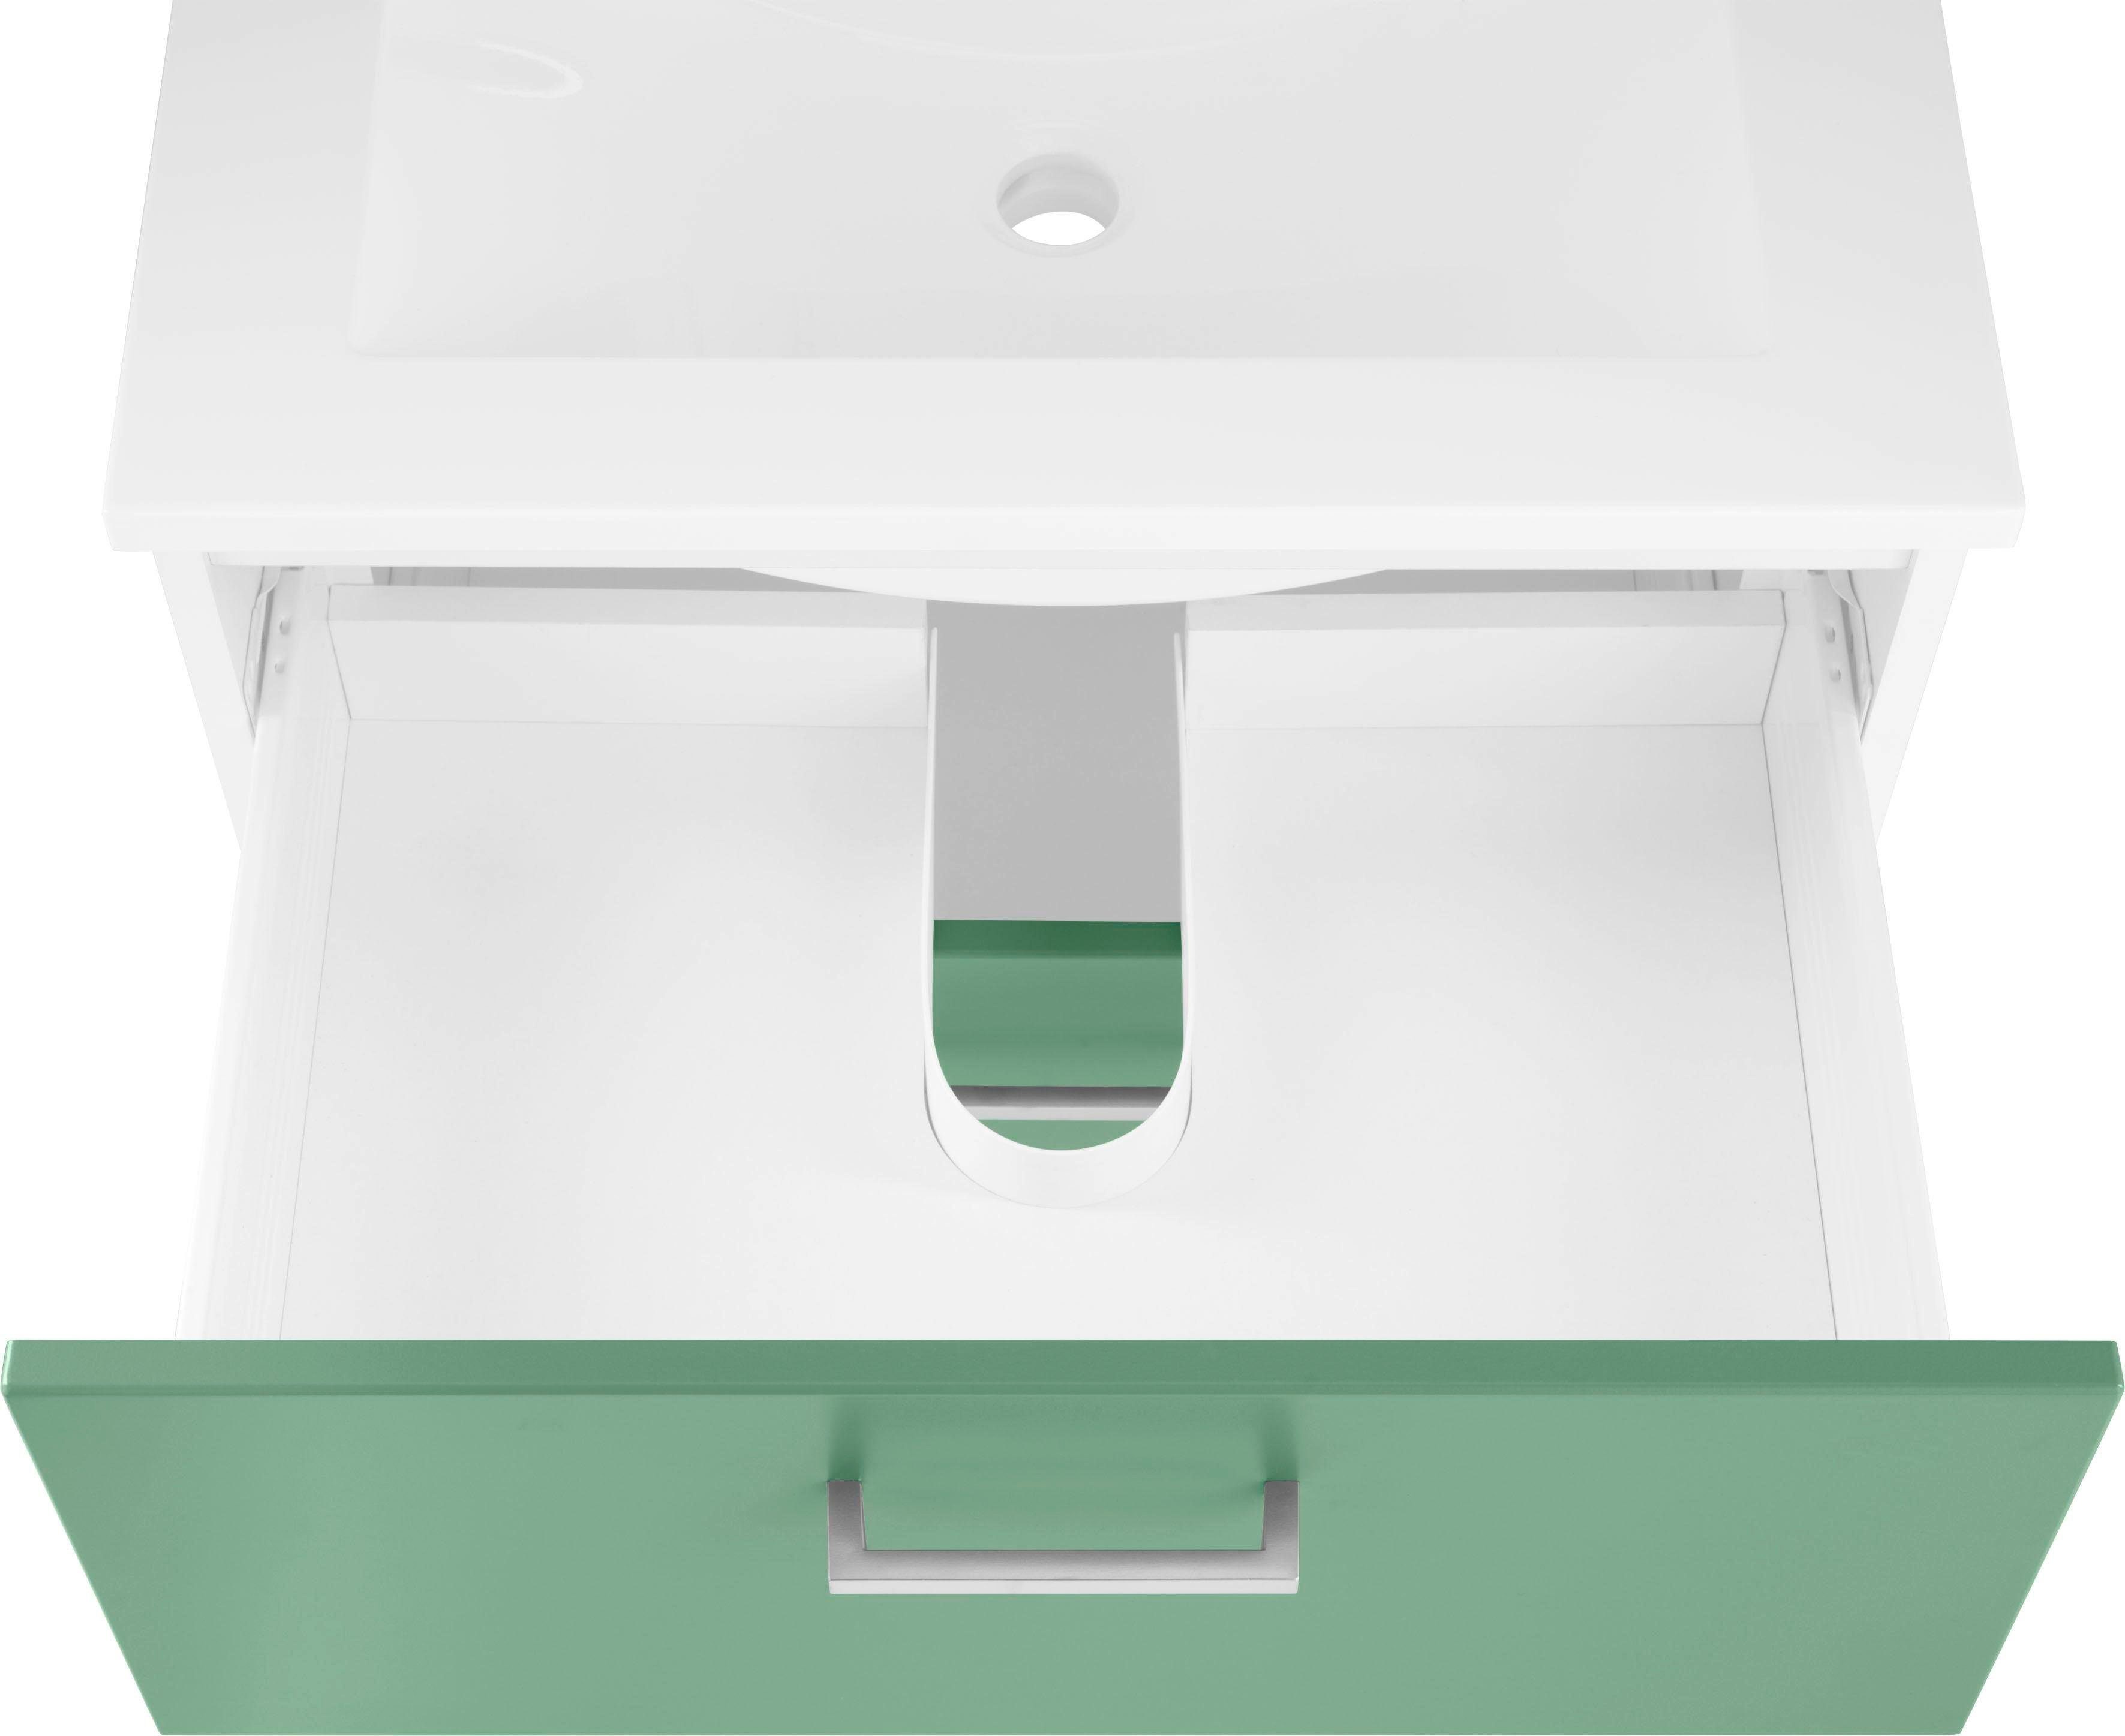 HELD MÖBEL Waschbeckenunterschrank Breite 60 cm inkl. Ribera grün/grün/weiß Waschtisch Waschbecken, Badmöbel